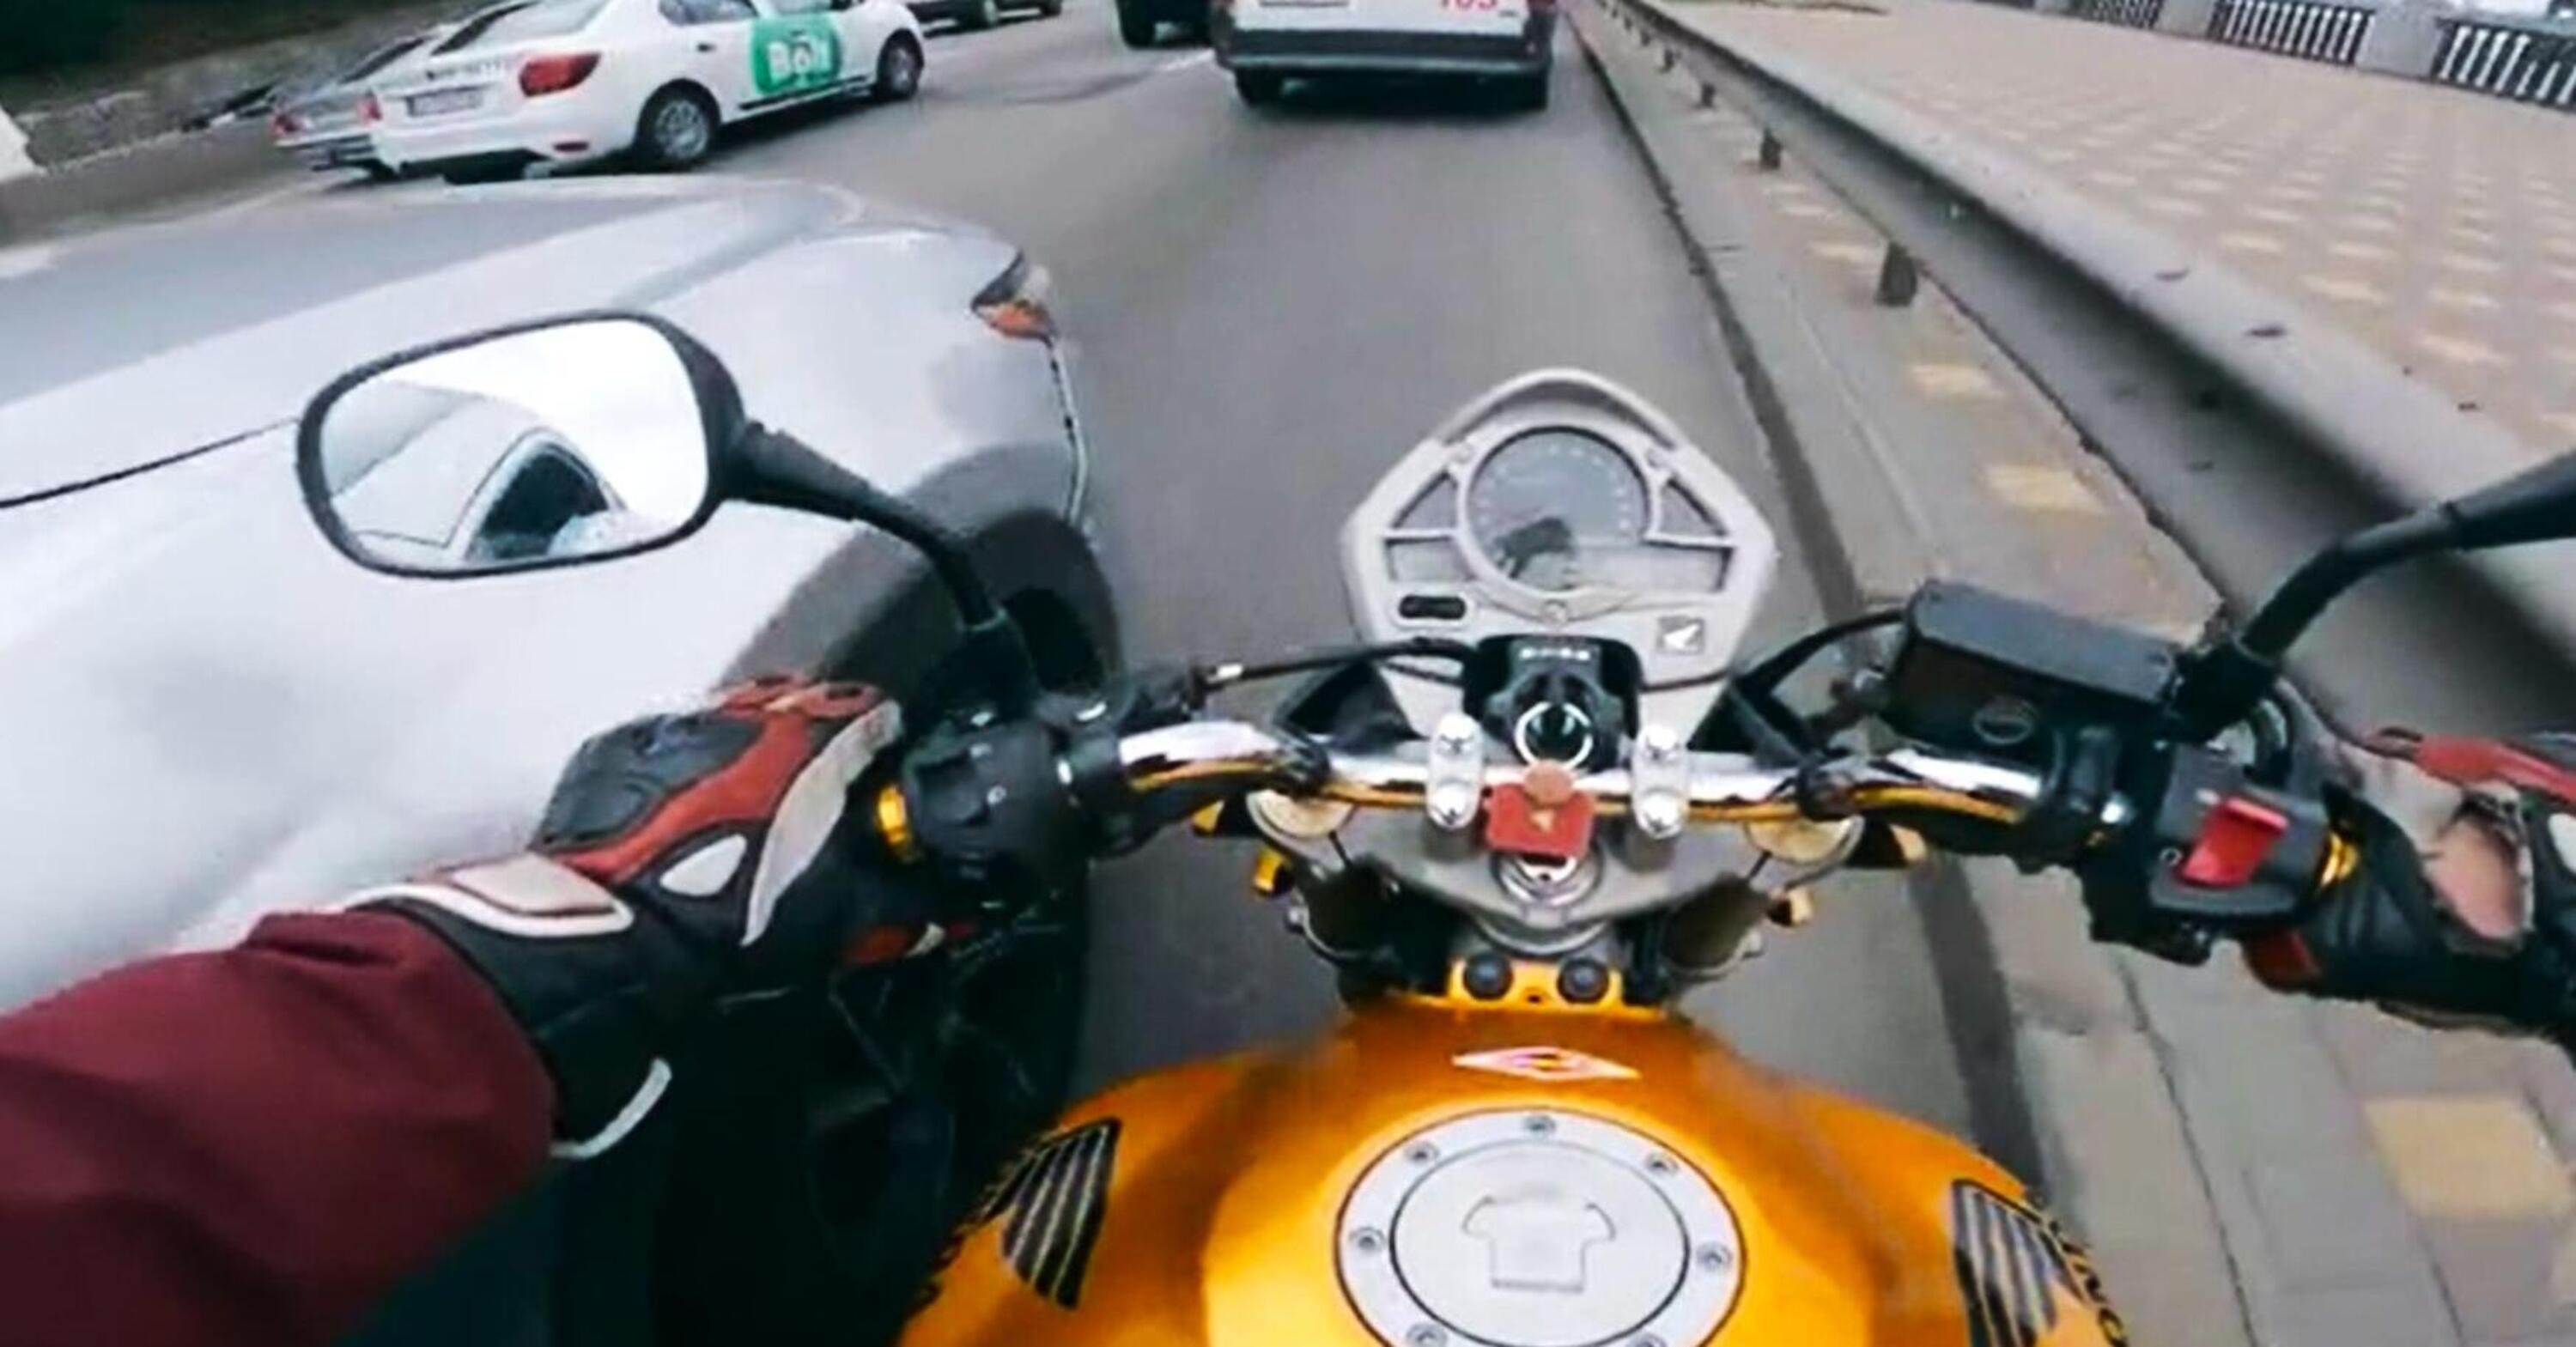 Il prepotente con il Suv gli chiude la strada, il motociclista sulla Hornet si arrabbia! [VIDEO VIRALE]